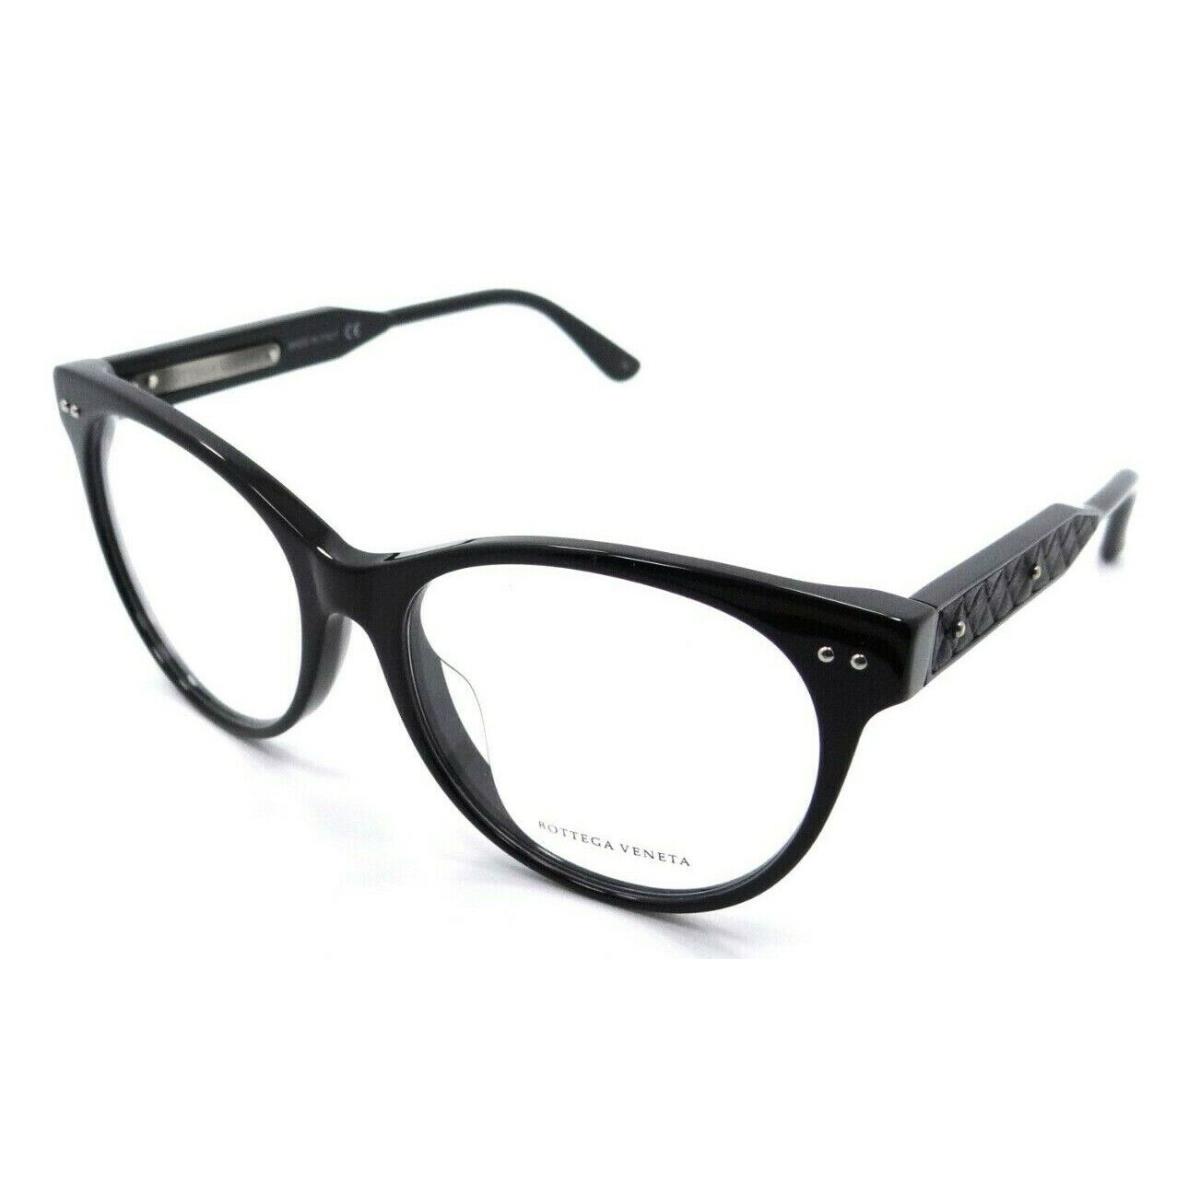 Bottega Veneta Eyeglasses Frames BV0017OA 001 52-16-145 Black Italy Asian Fit